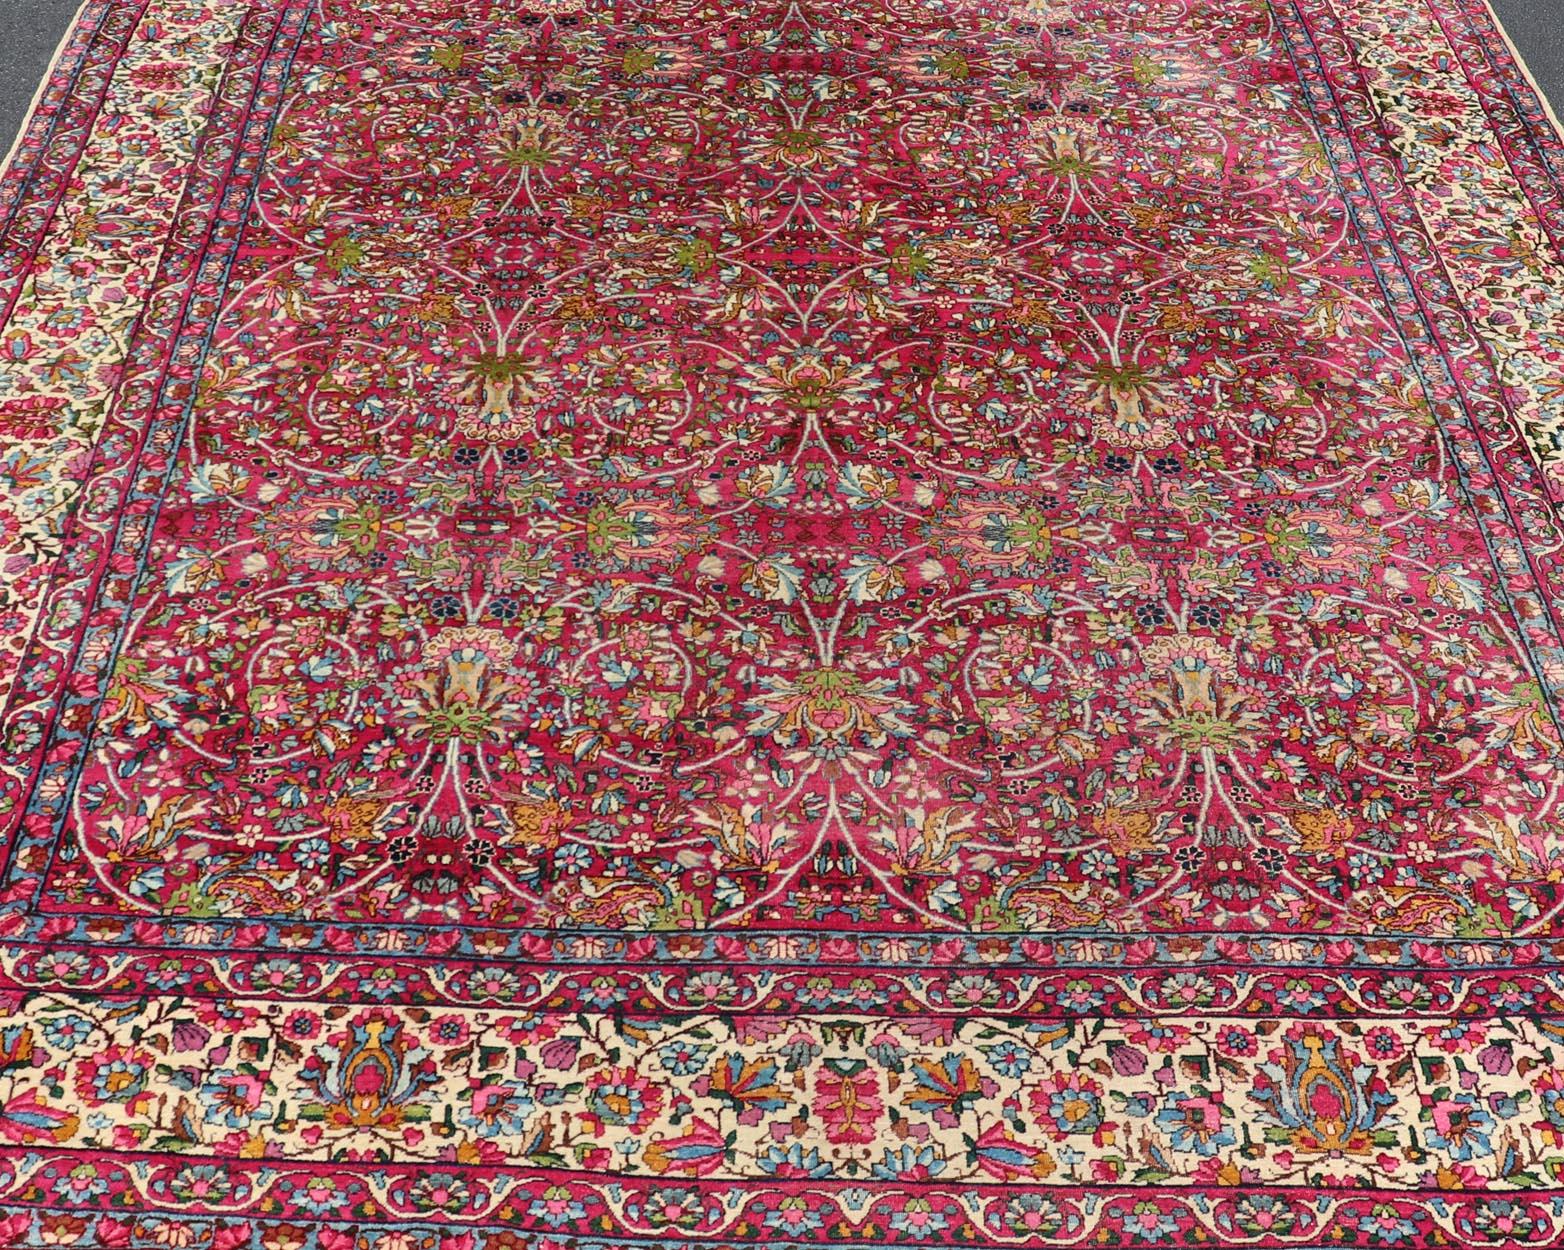 Magenta antique tapis persan Lavar Kerman avec motif floral all-over, tapis a-0702, pays d'origine / type : Iran / Lavar Kerman, circa 1910

Cet exquis tapis antique Lavar Kerman provient du sud-est de la Perse au début du XXe siècle. Il présente